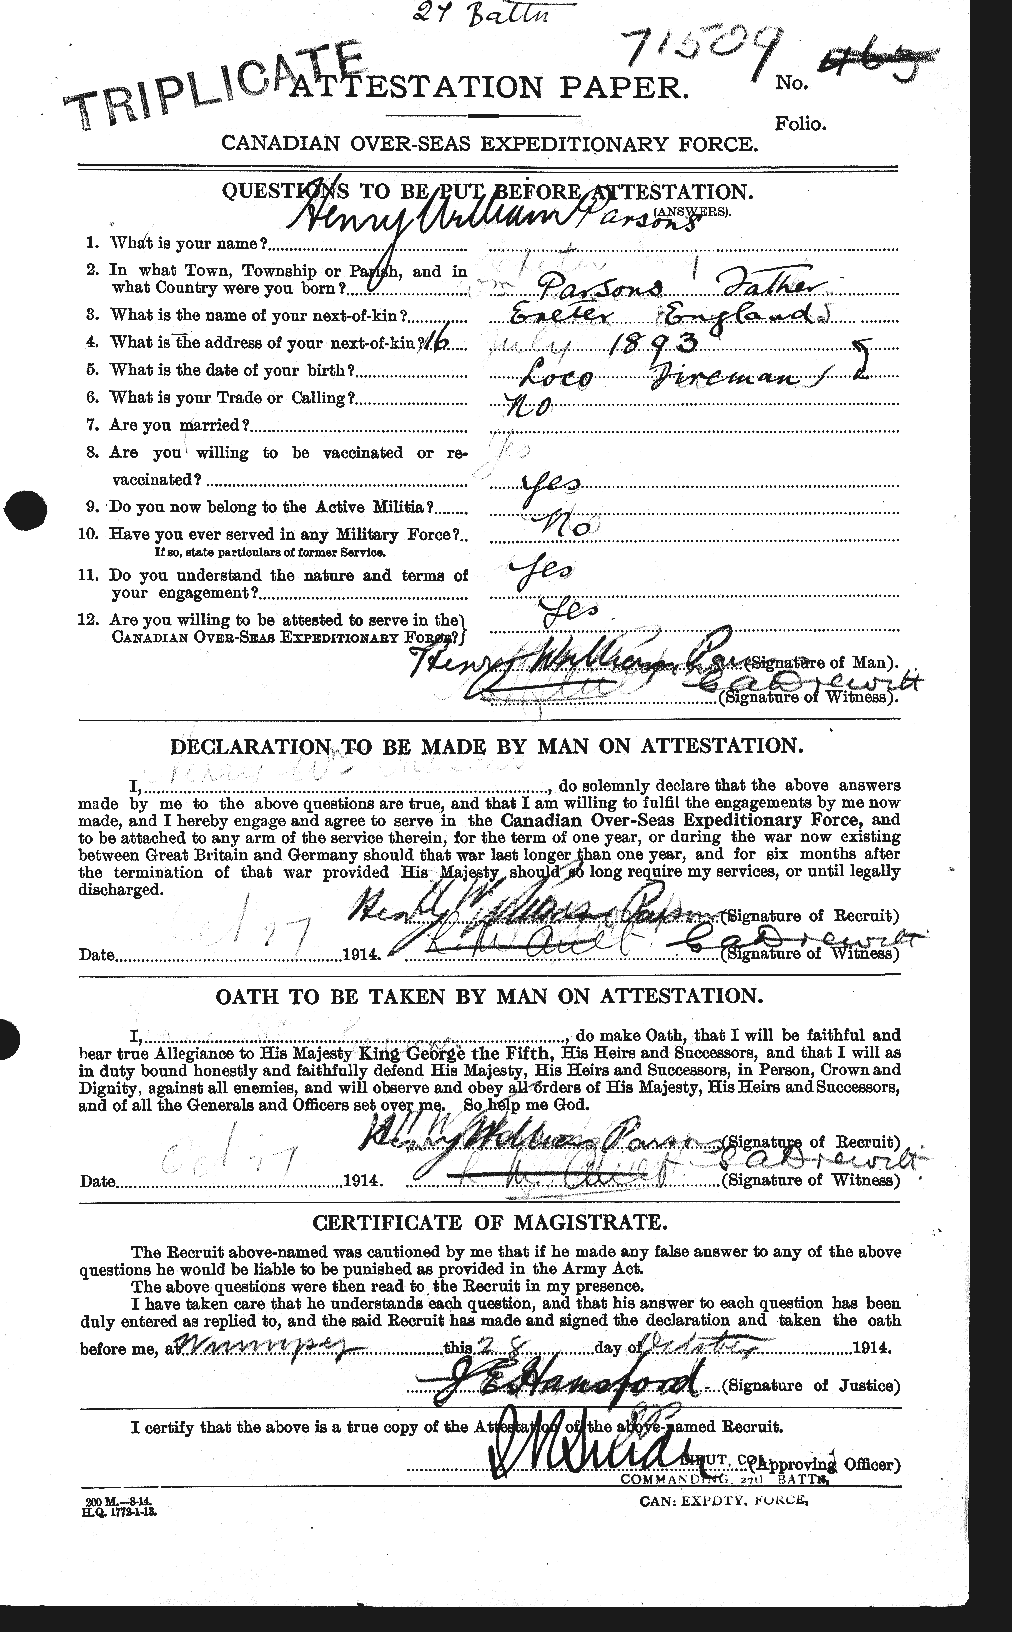 Dossiers du Personnel de la Première Guerre mondiale - CEC 566892a